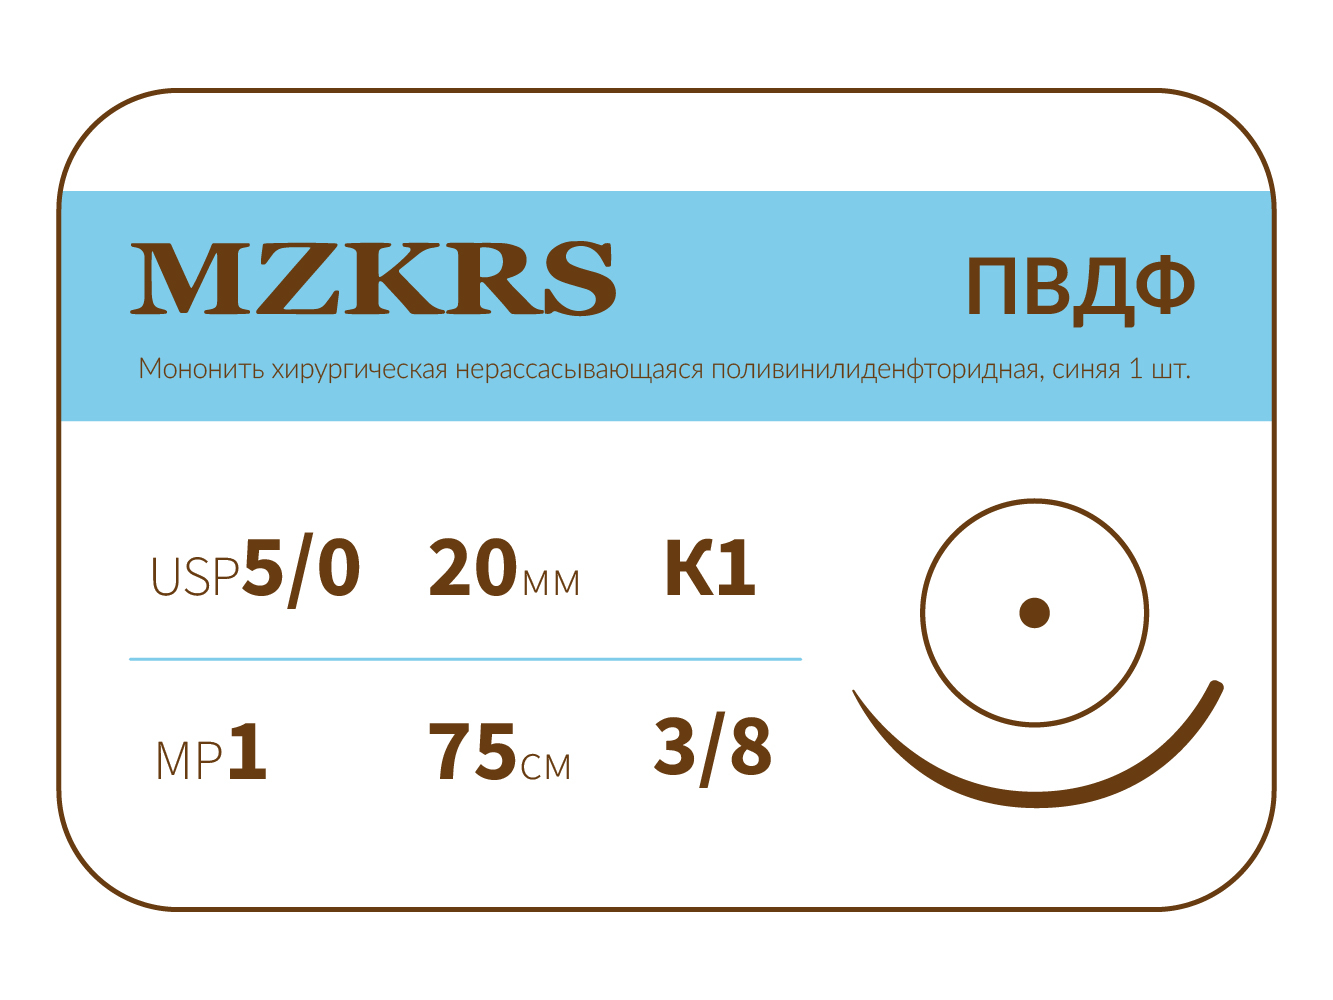 2038К1-Premium-5/0 (1)75- ПВДФ хирургическая нить поливинилиденфторидная, MZKRS (Россия)